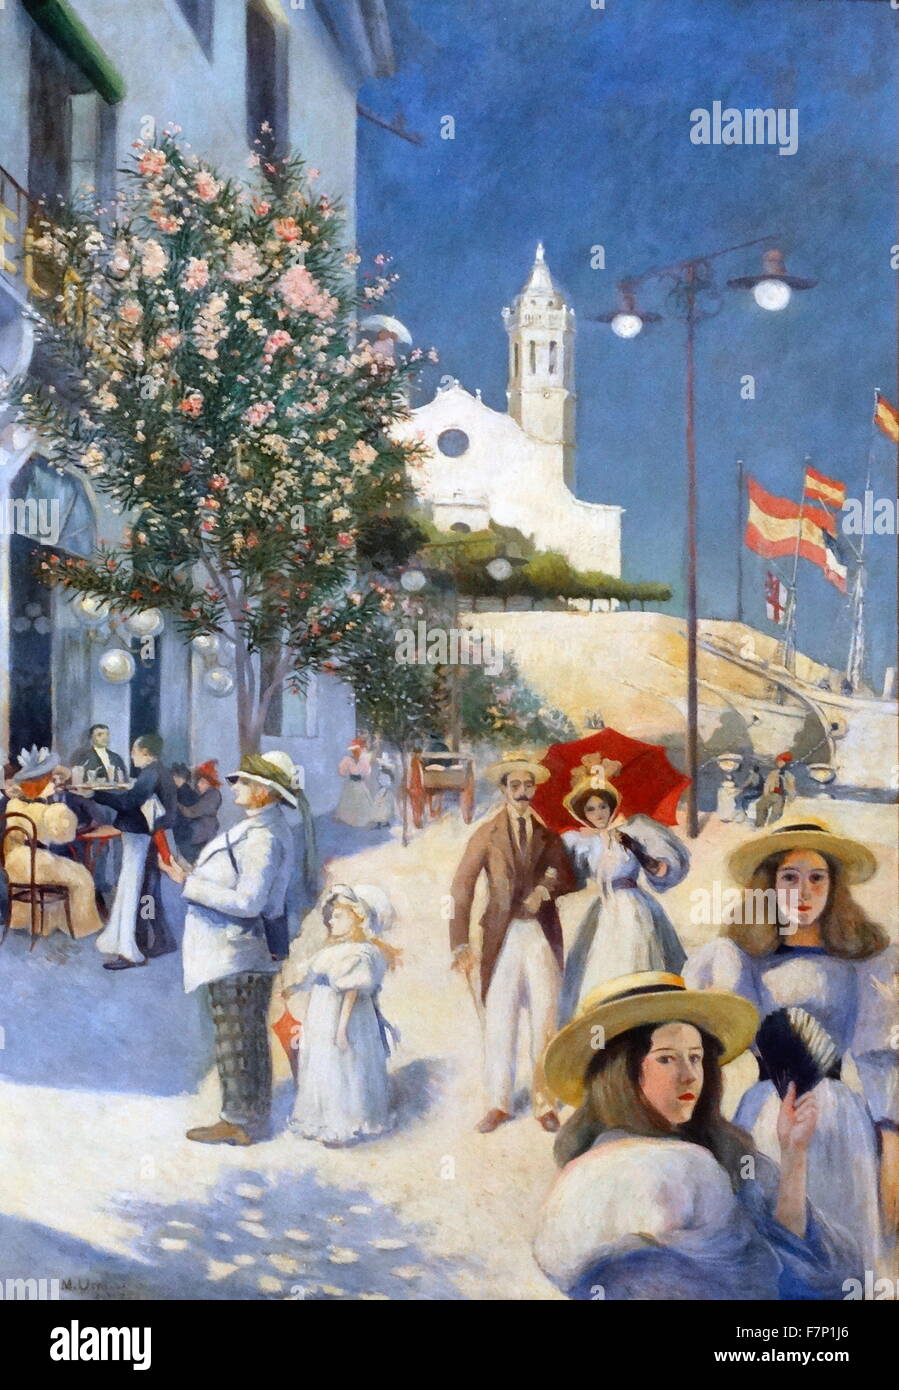 Gemälde des 20. Jahrhunderts Sitges von Miquel Utrillo (1862-1934), Ingenieur, Maler, Dekorateur, Kunstkritiker und Promoter Spanisch. Datiert 1895 Stockfoto